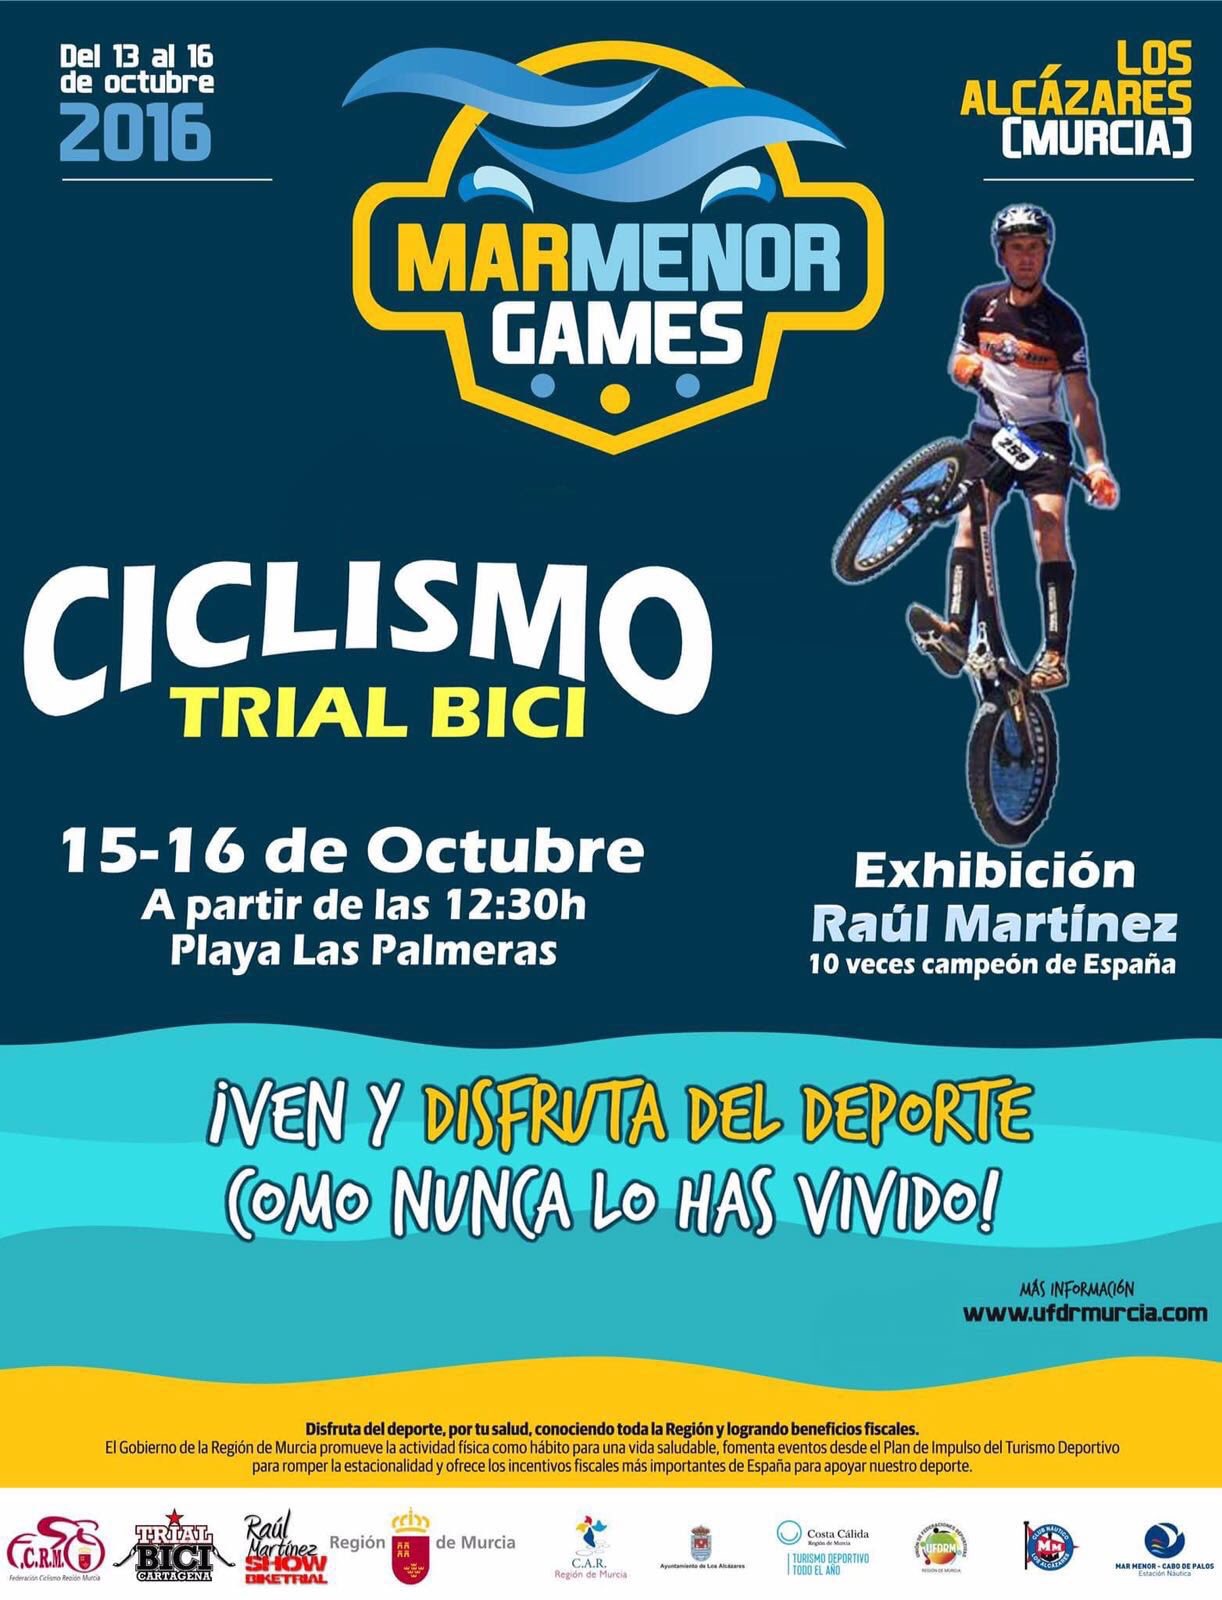 Exhibiciones De Trial Bici En Mar Menor Games